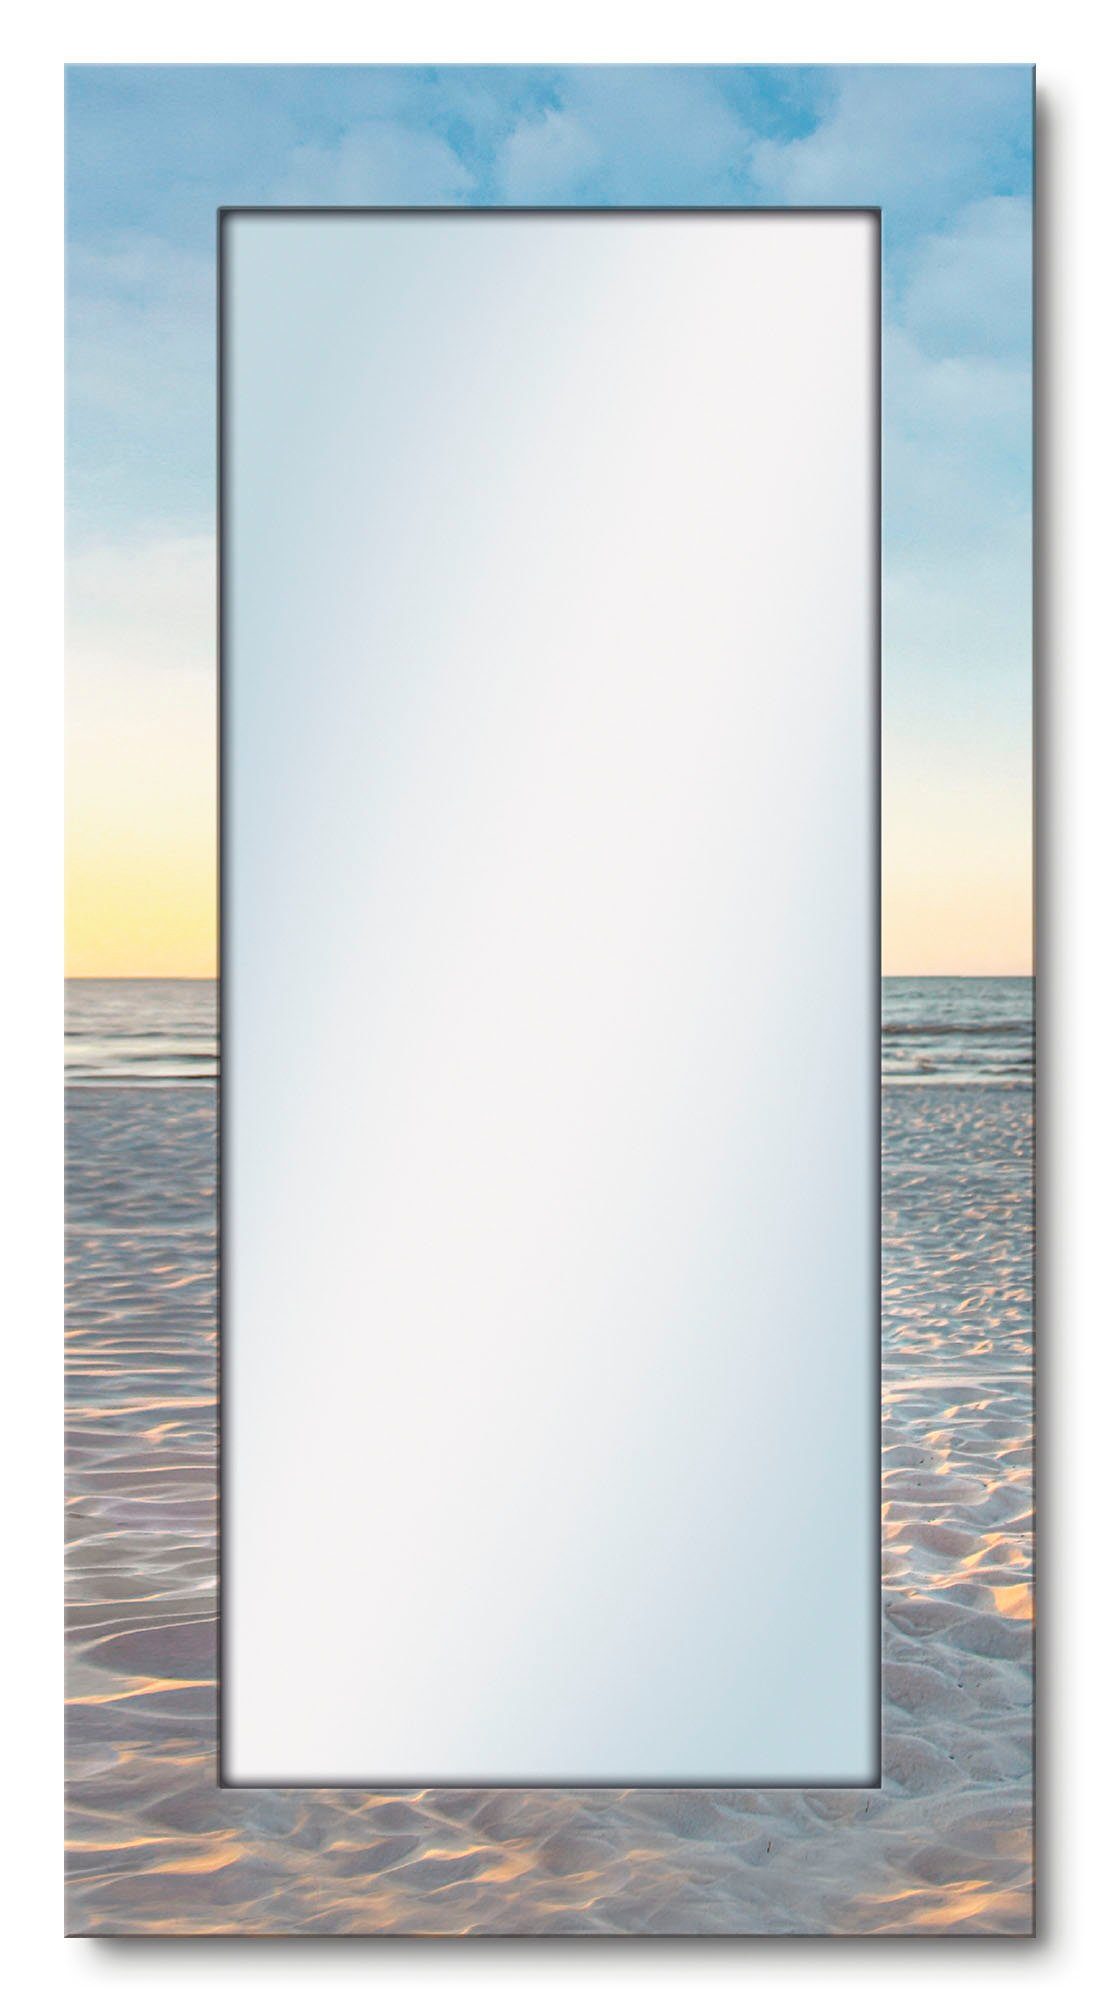 artland sierspiegel ostsee7 - strandstoel spiegel met lijst voor het hele lichaam, wandspiegel, met motiefrand, landhuis blauw